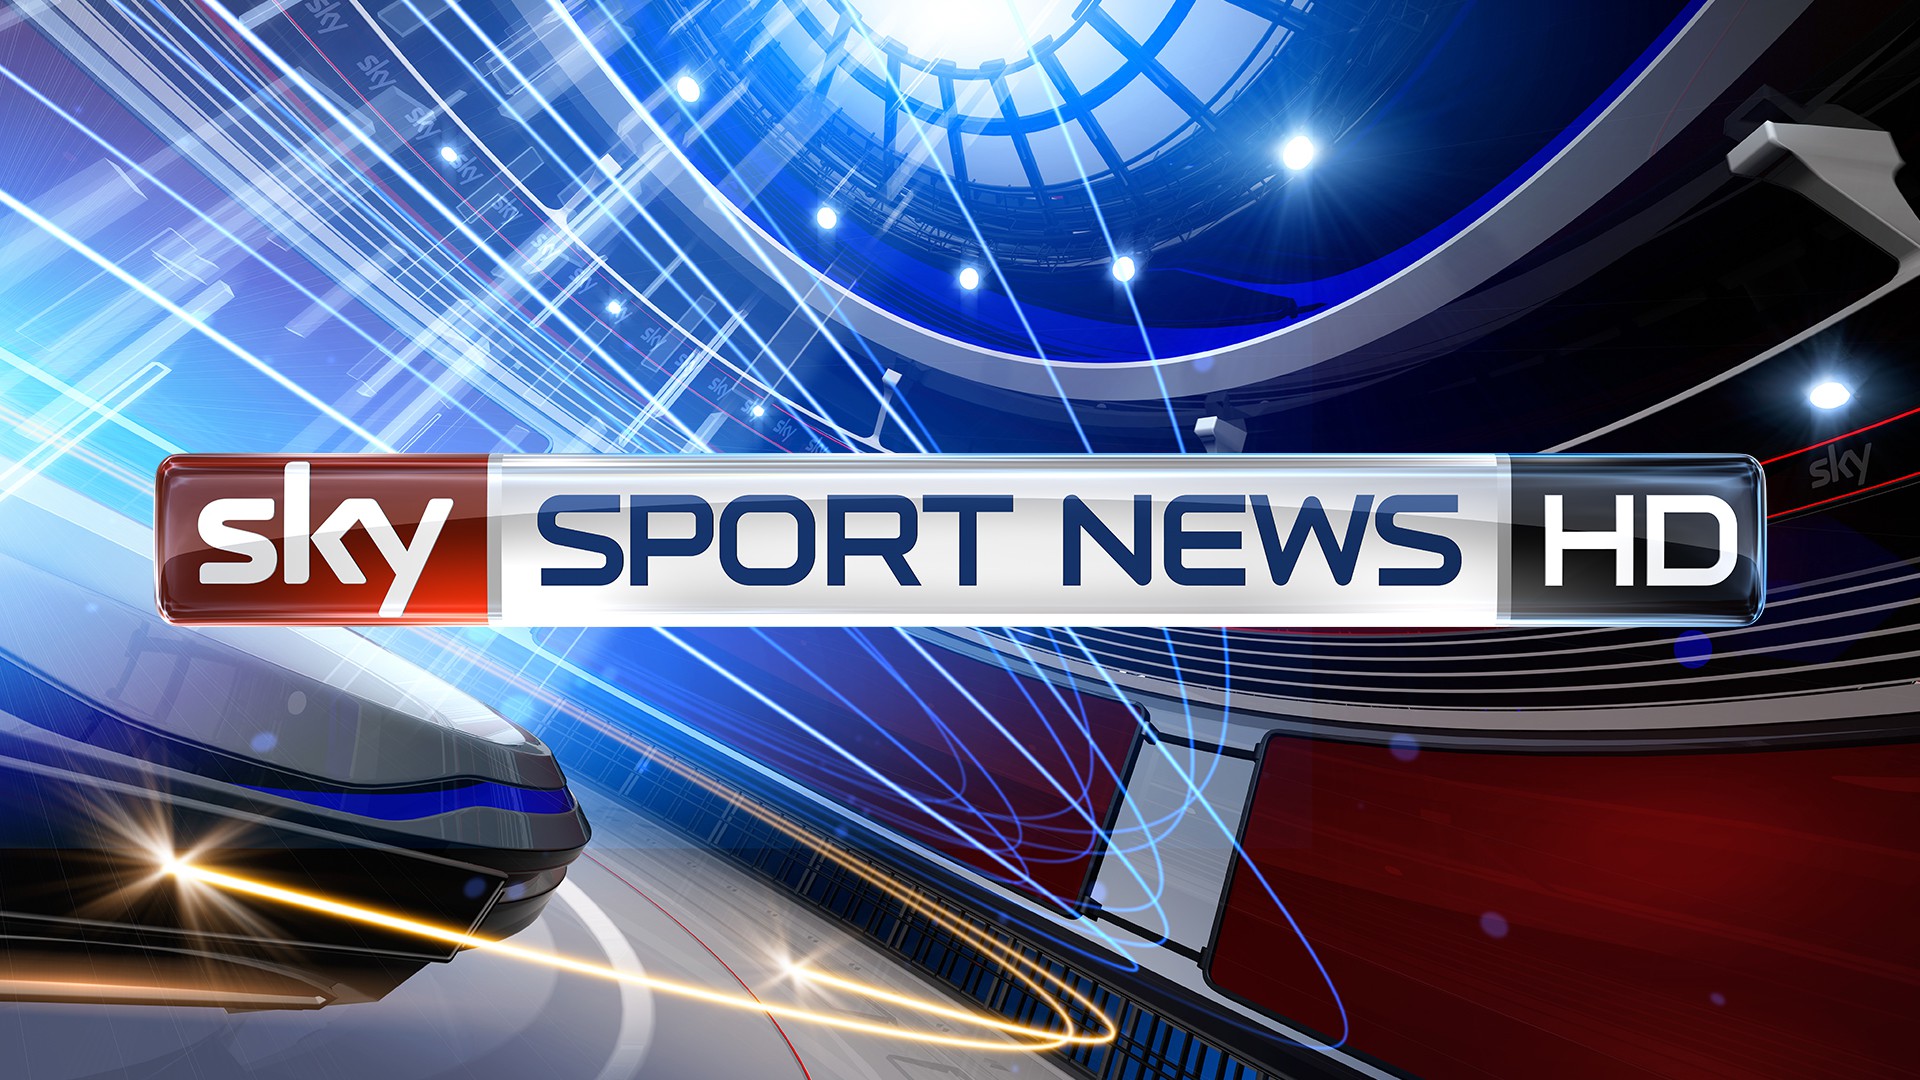 sky-sport-news-hd-alle-infos-zum-empfang-des-neuen-free-tv-senders